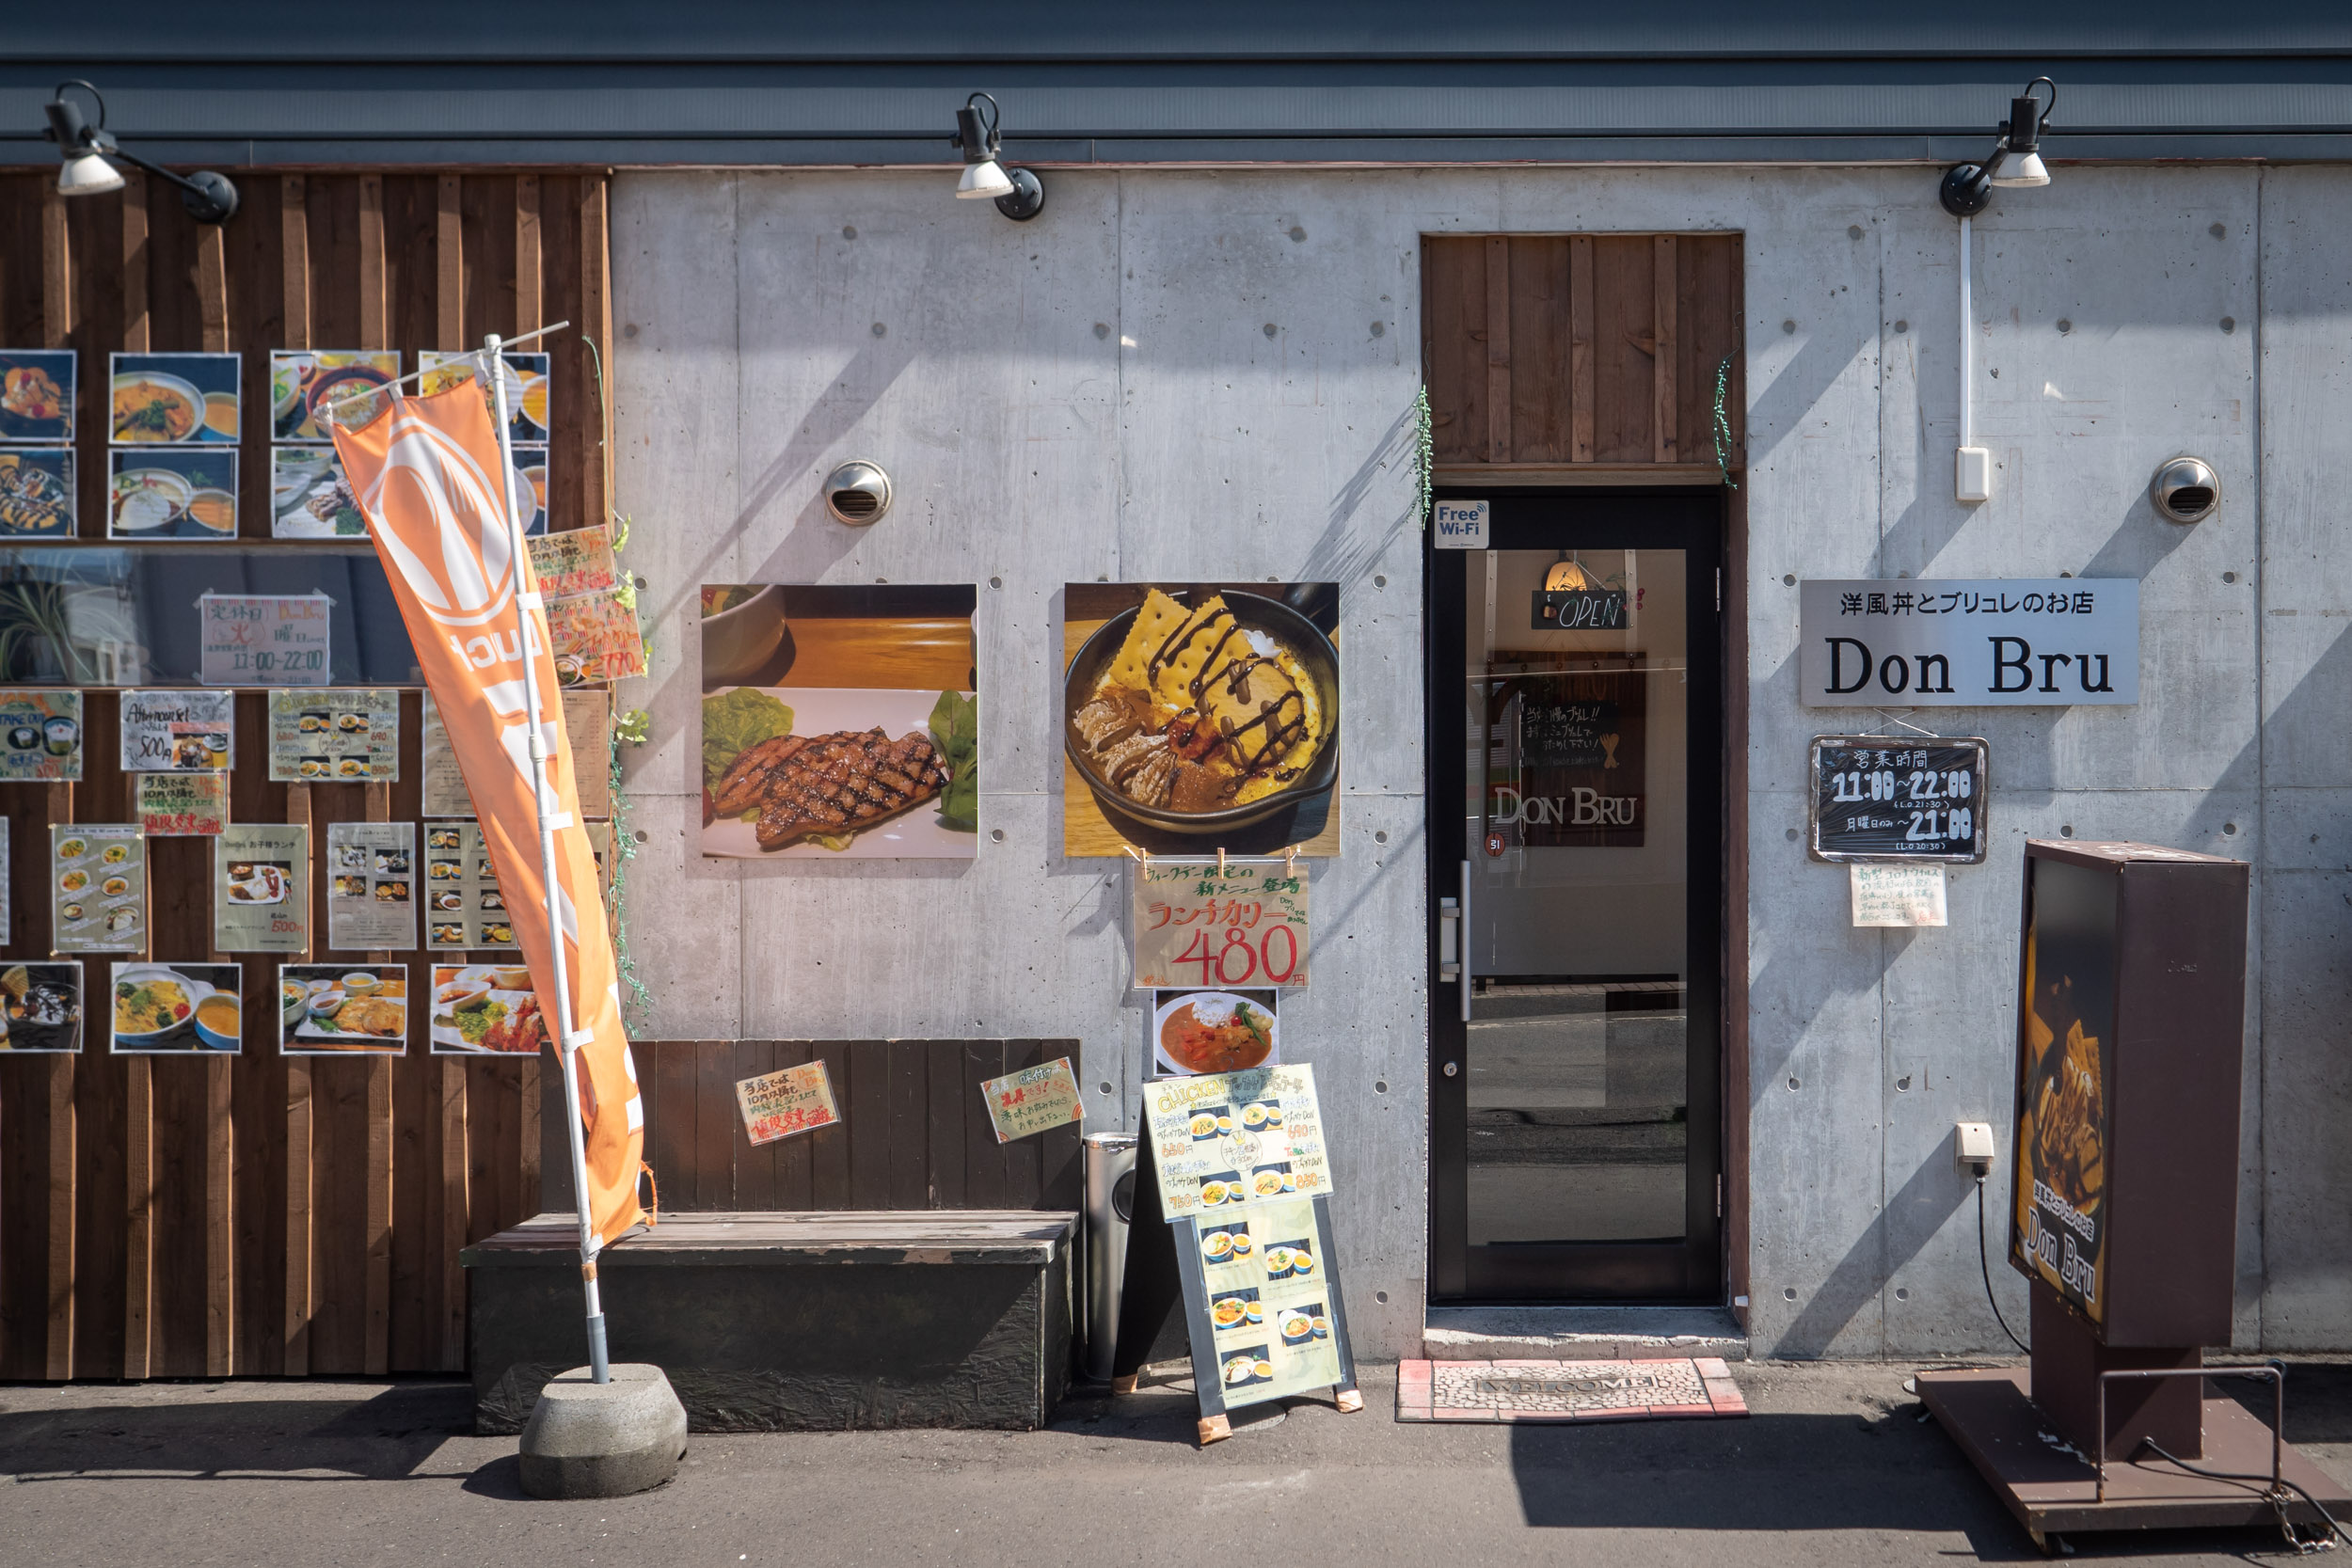  洋風丼とブリュレのお店 DonBru （ドンブリュ）の入口　DMC-GX8 + LEICA DG 12-60mm